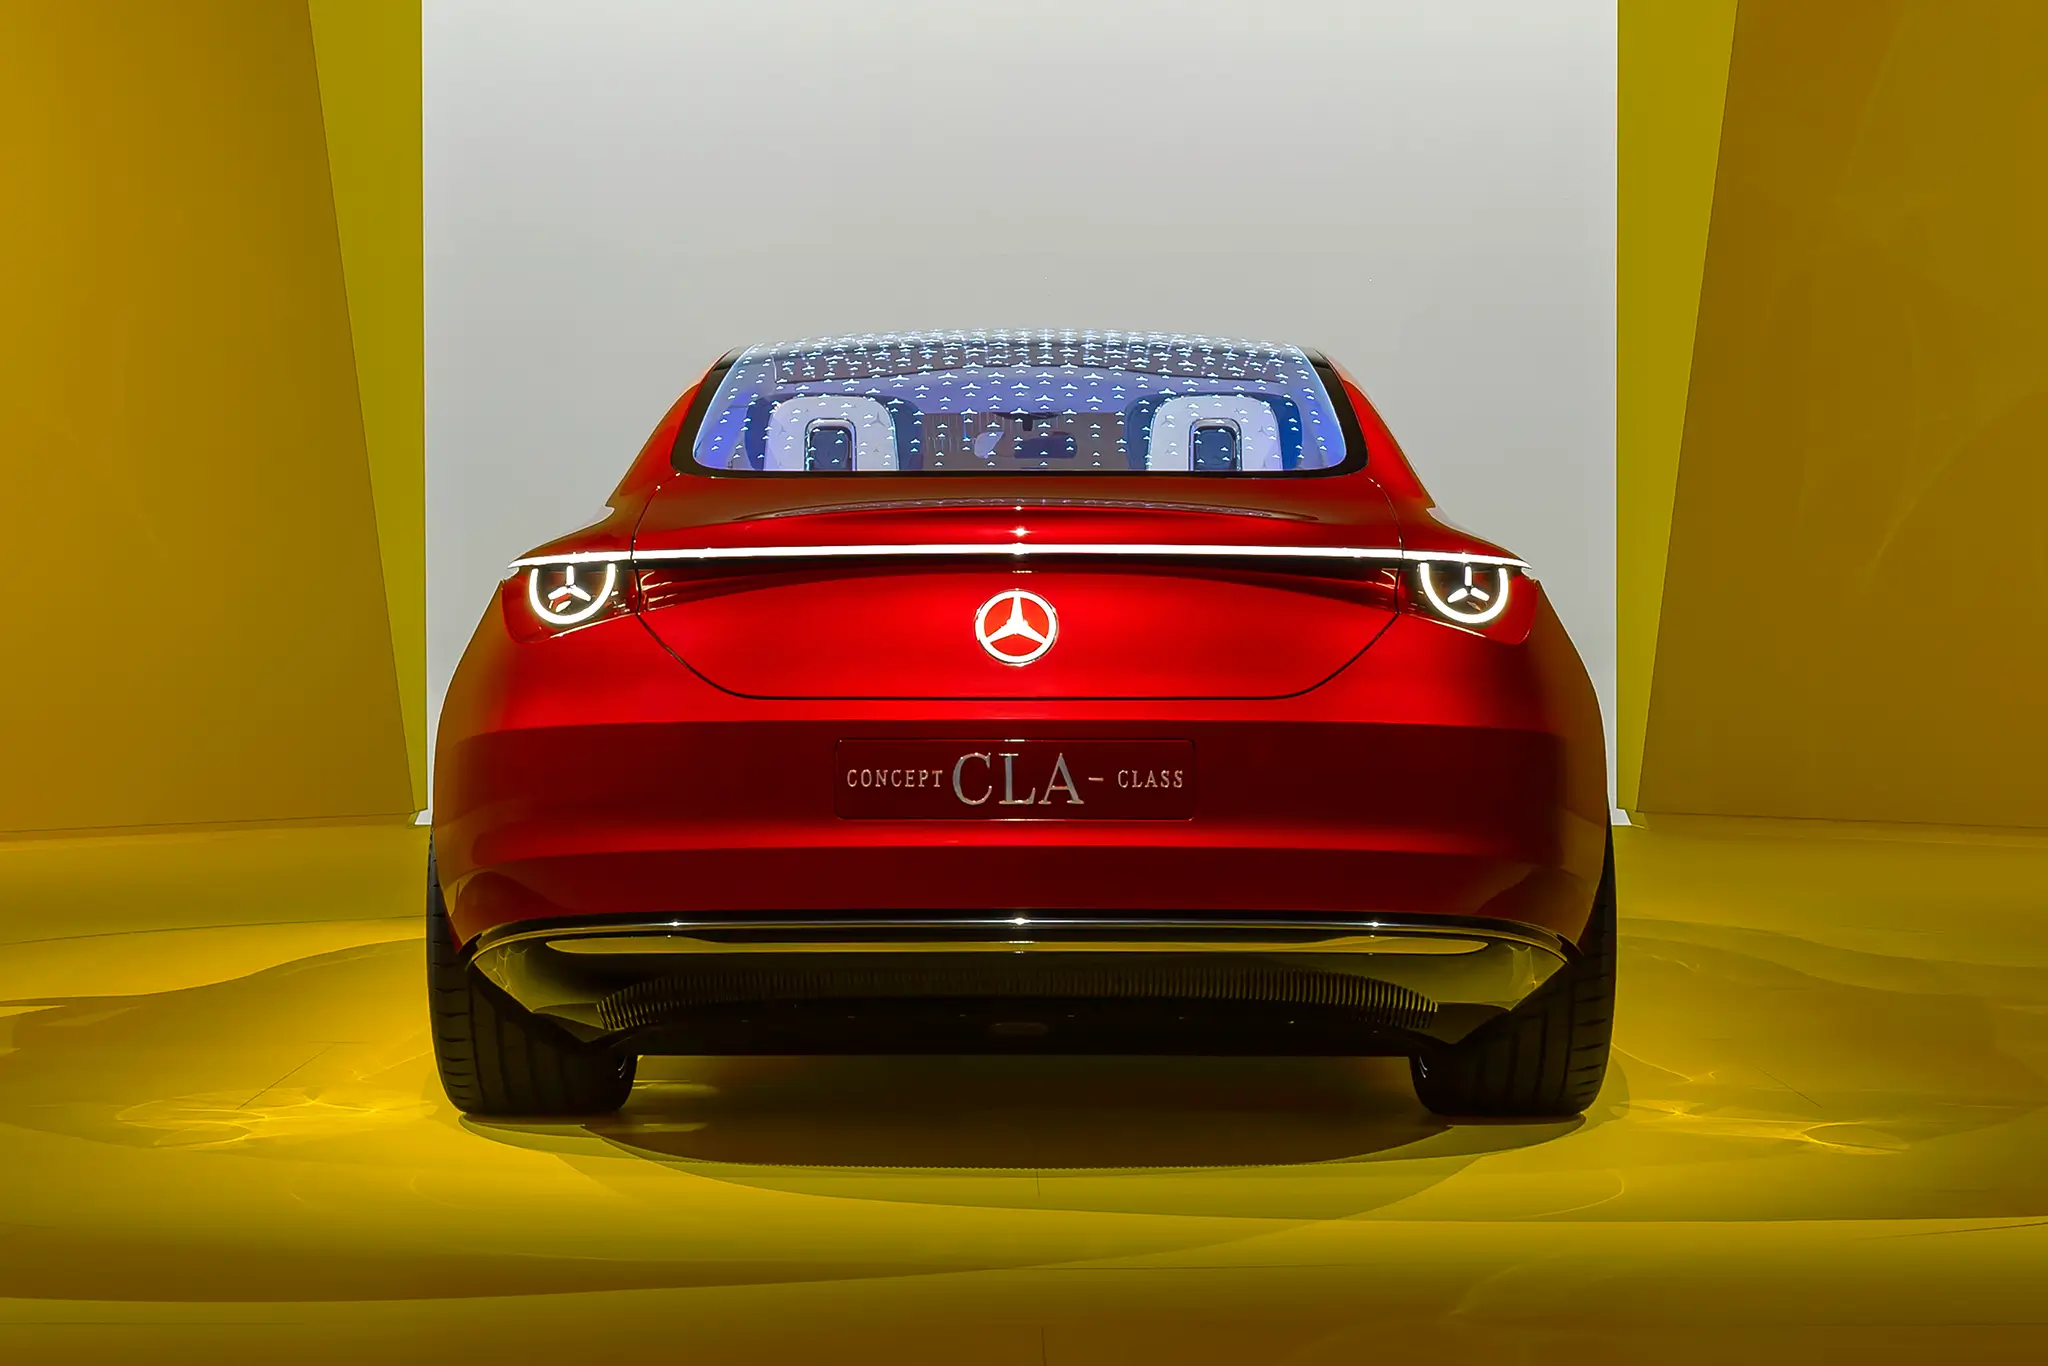 Vista traseira do Mercedes-Benz CLA Concept